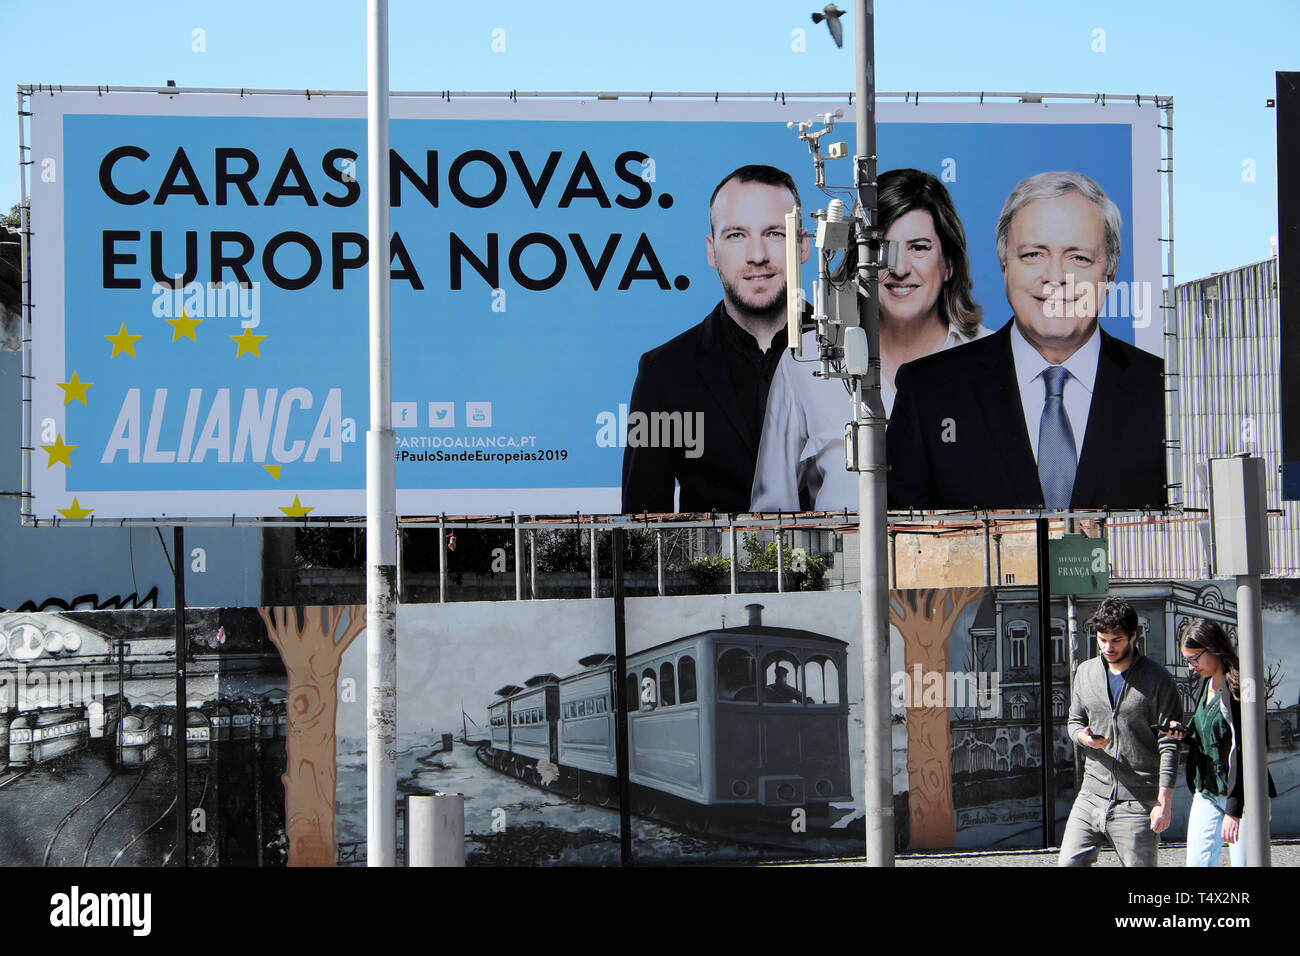 Neue Gesichter, neue Europa Caras - Novas, Europa Nova Aliança Mitte rechts Allianz politische Partei Poster auf Anzeige März 2019 in der Straße Porto Portugal Stockfoto